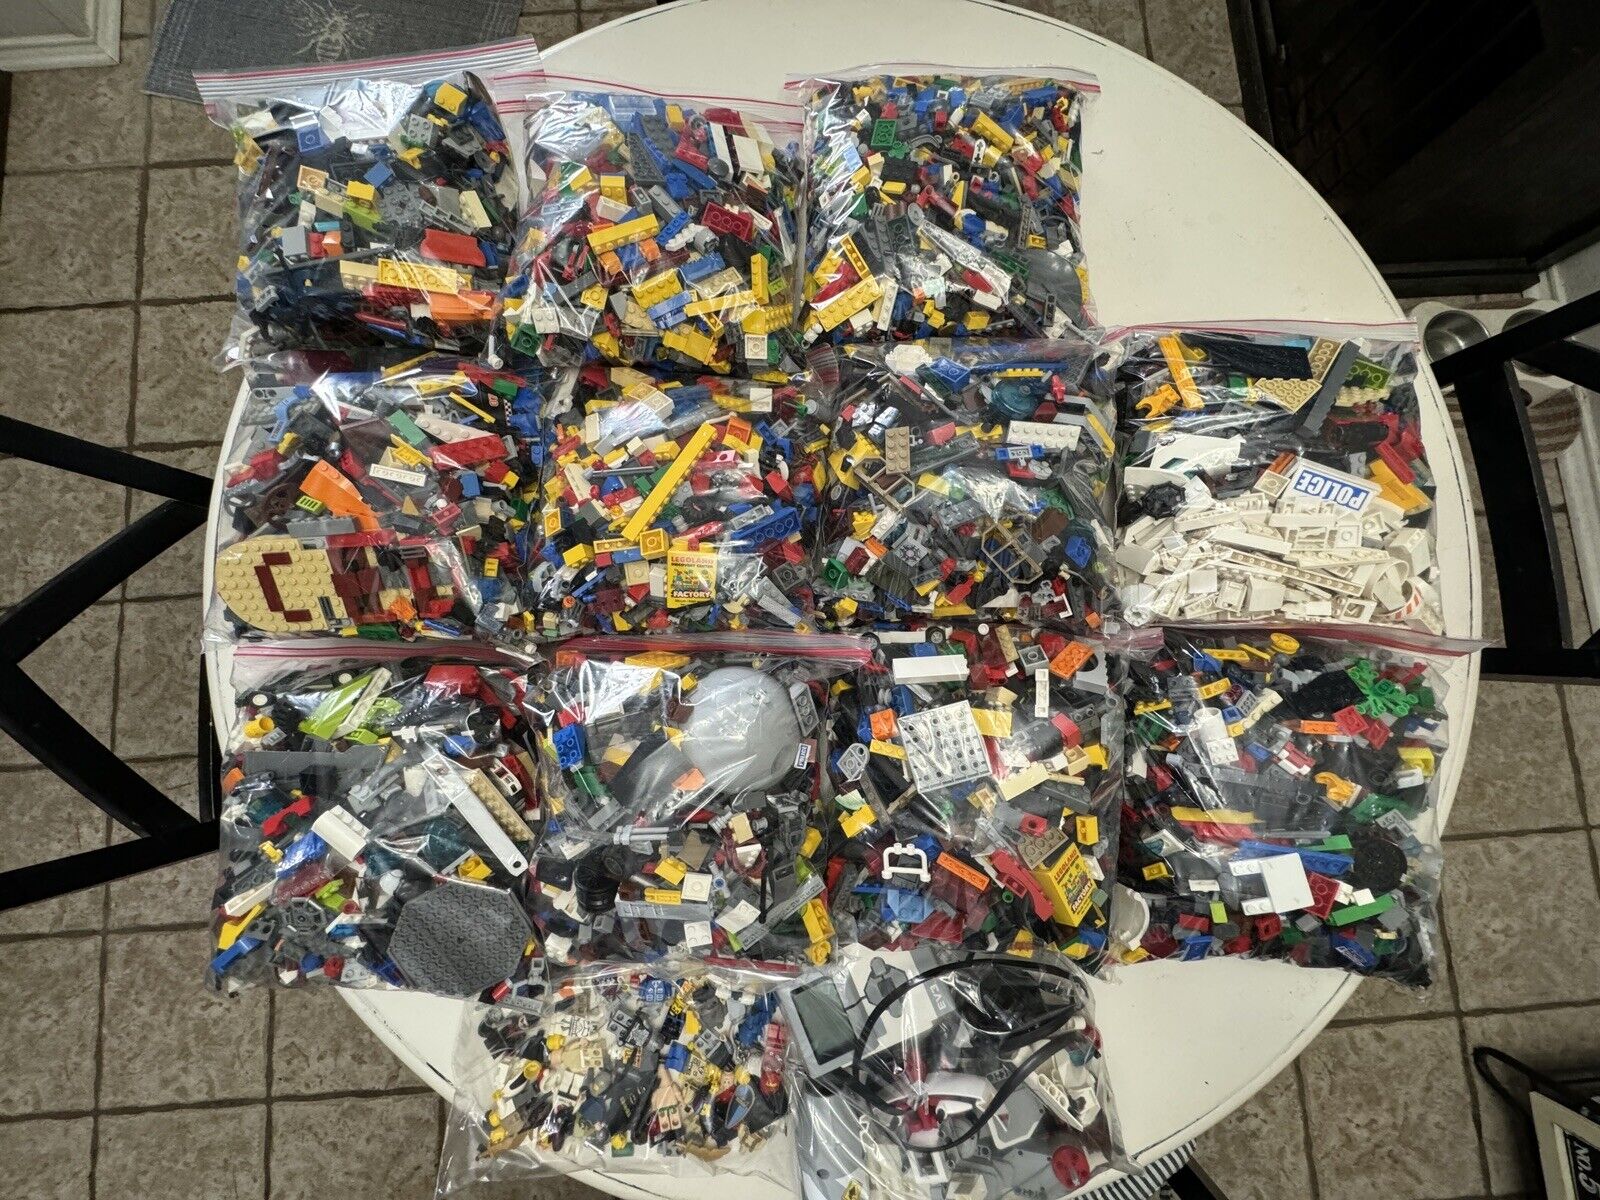 11 Gallon Bags Of Legos. Mini Figures And Ev3. Mixed Star Wars, City, Batman,etc